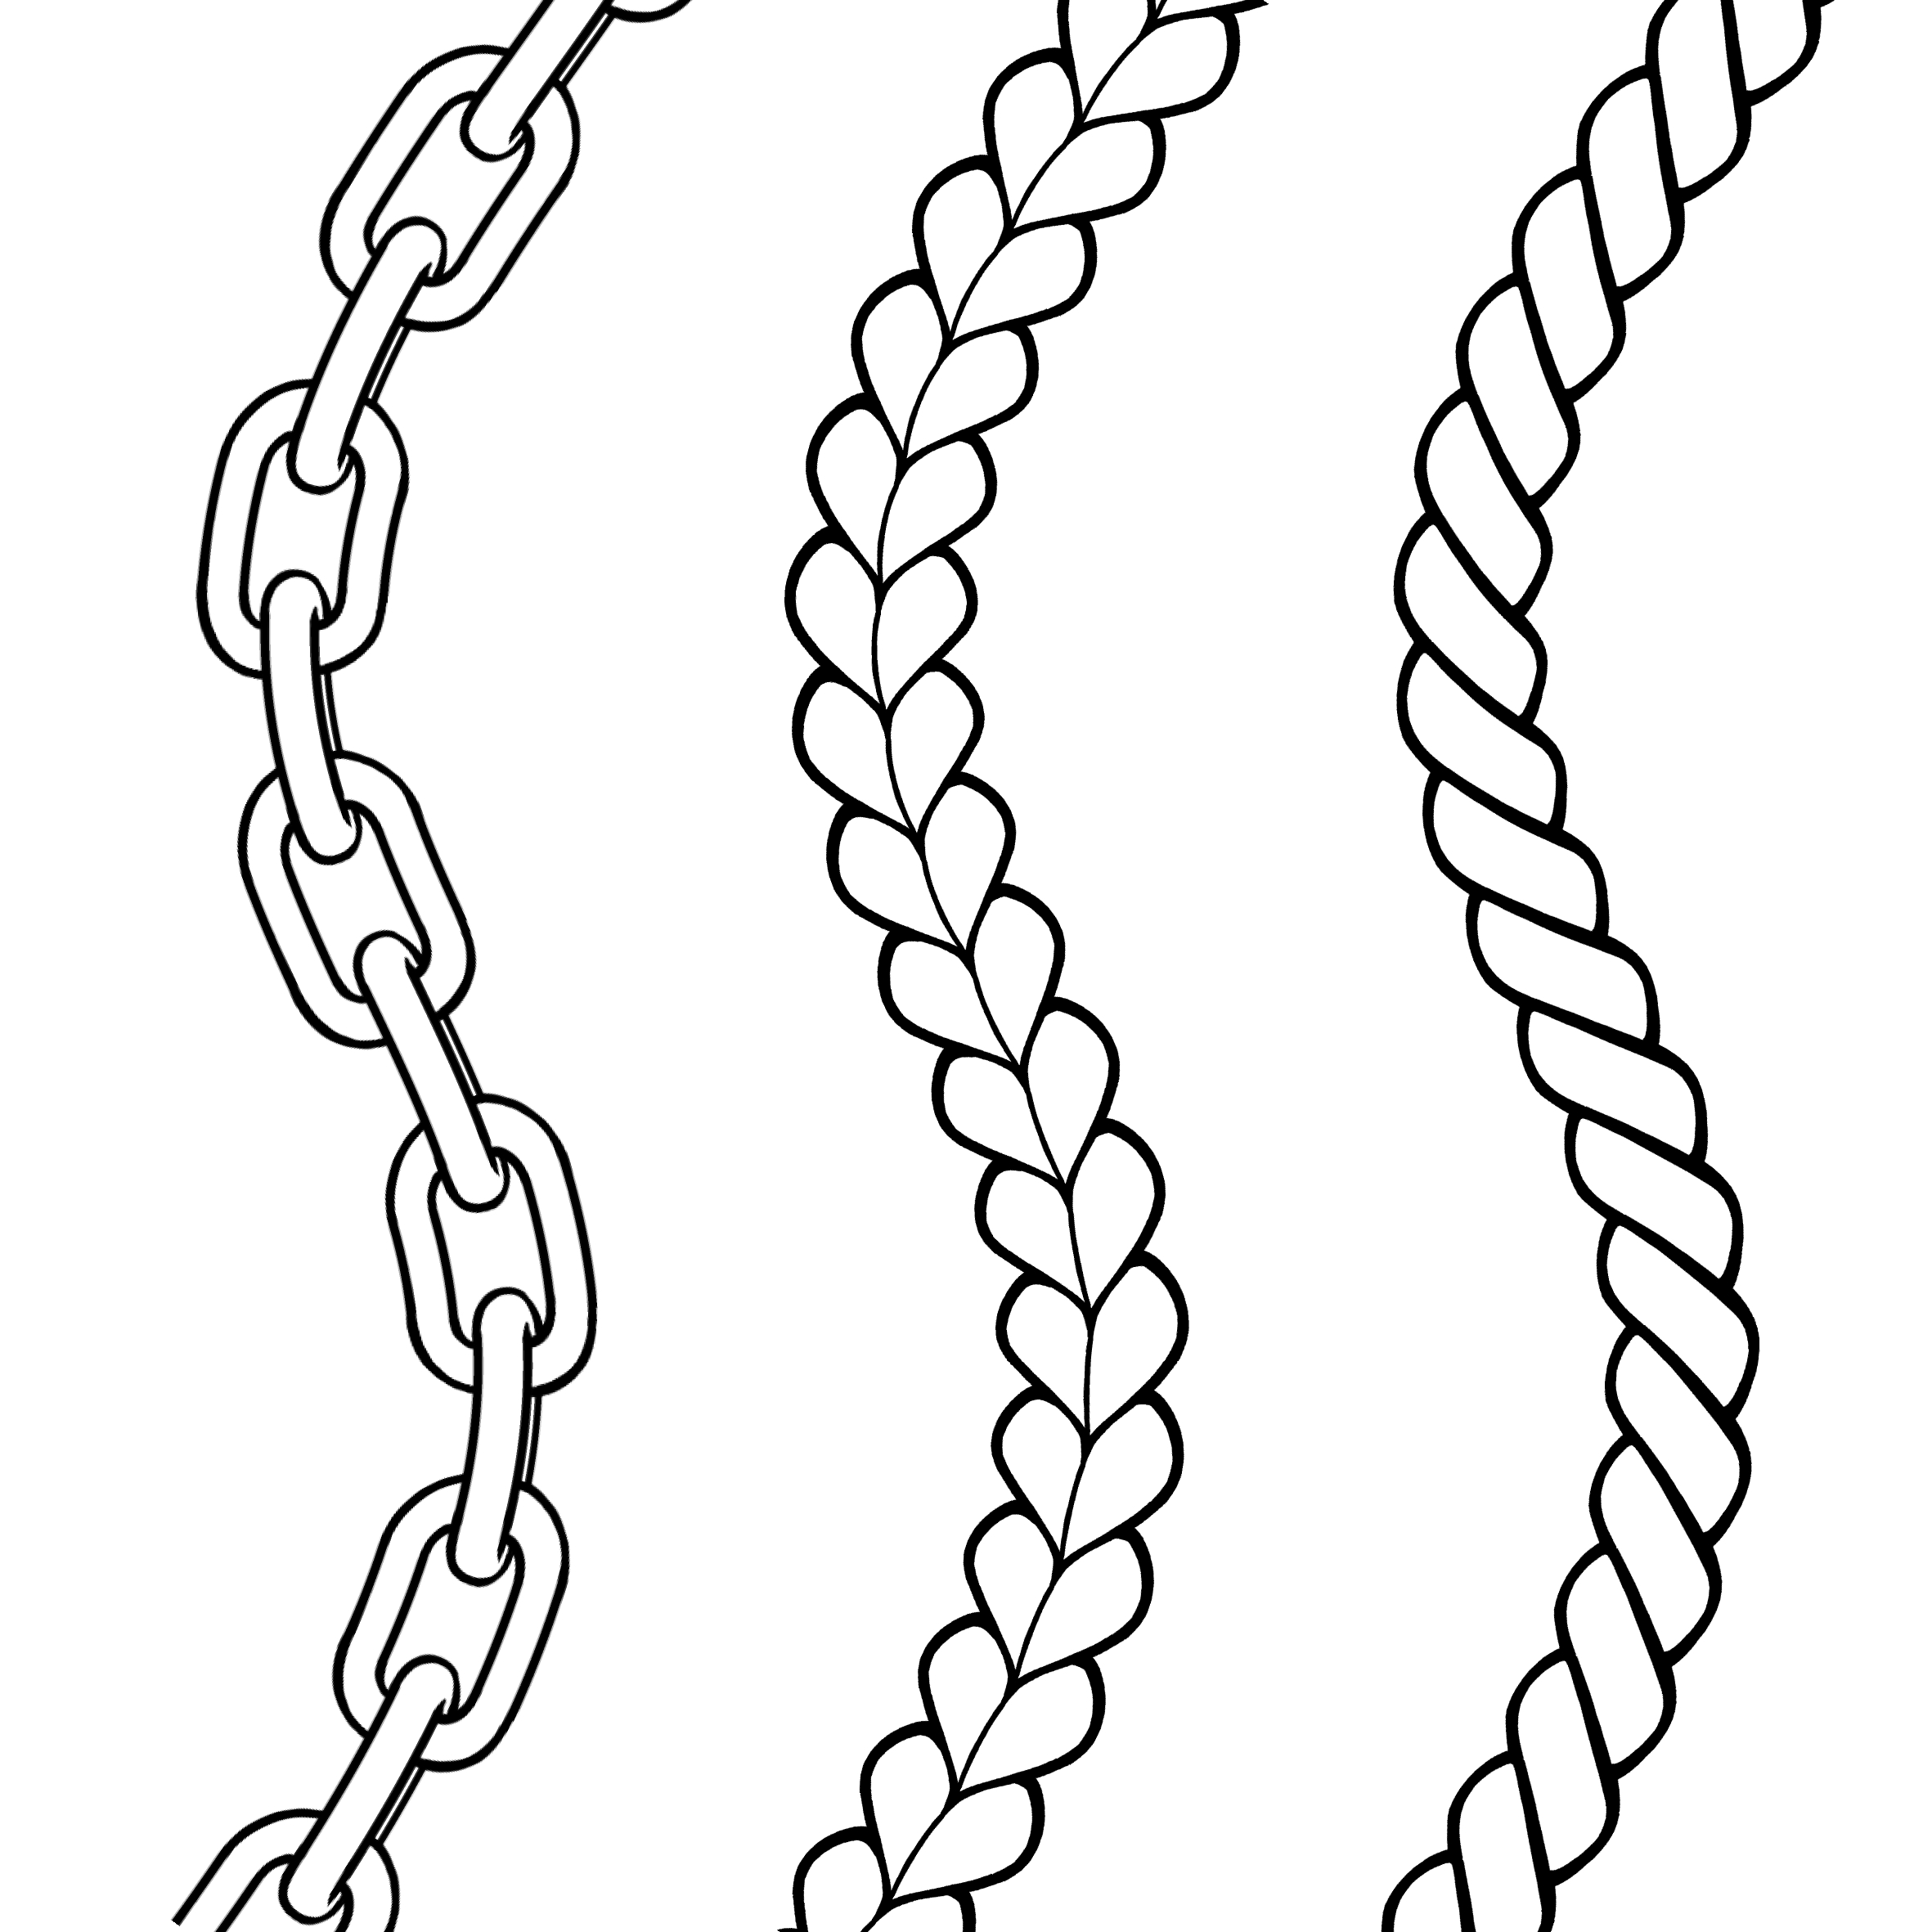 铁链的简易画法图片